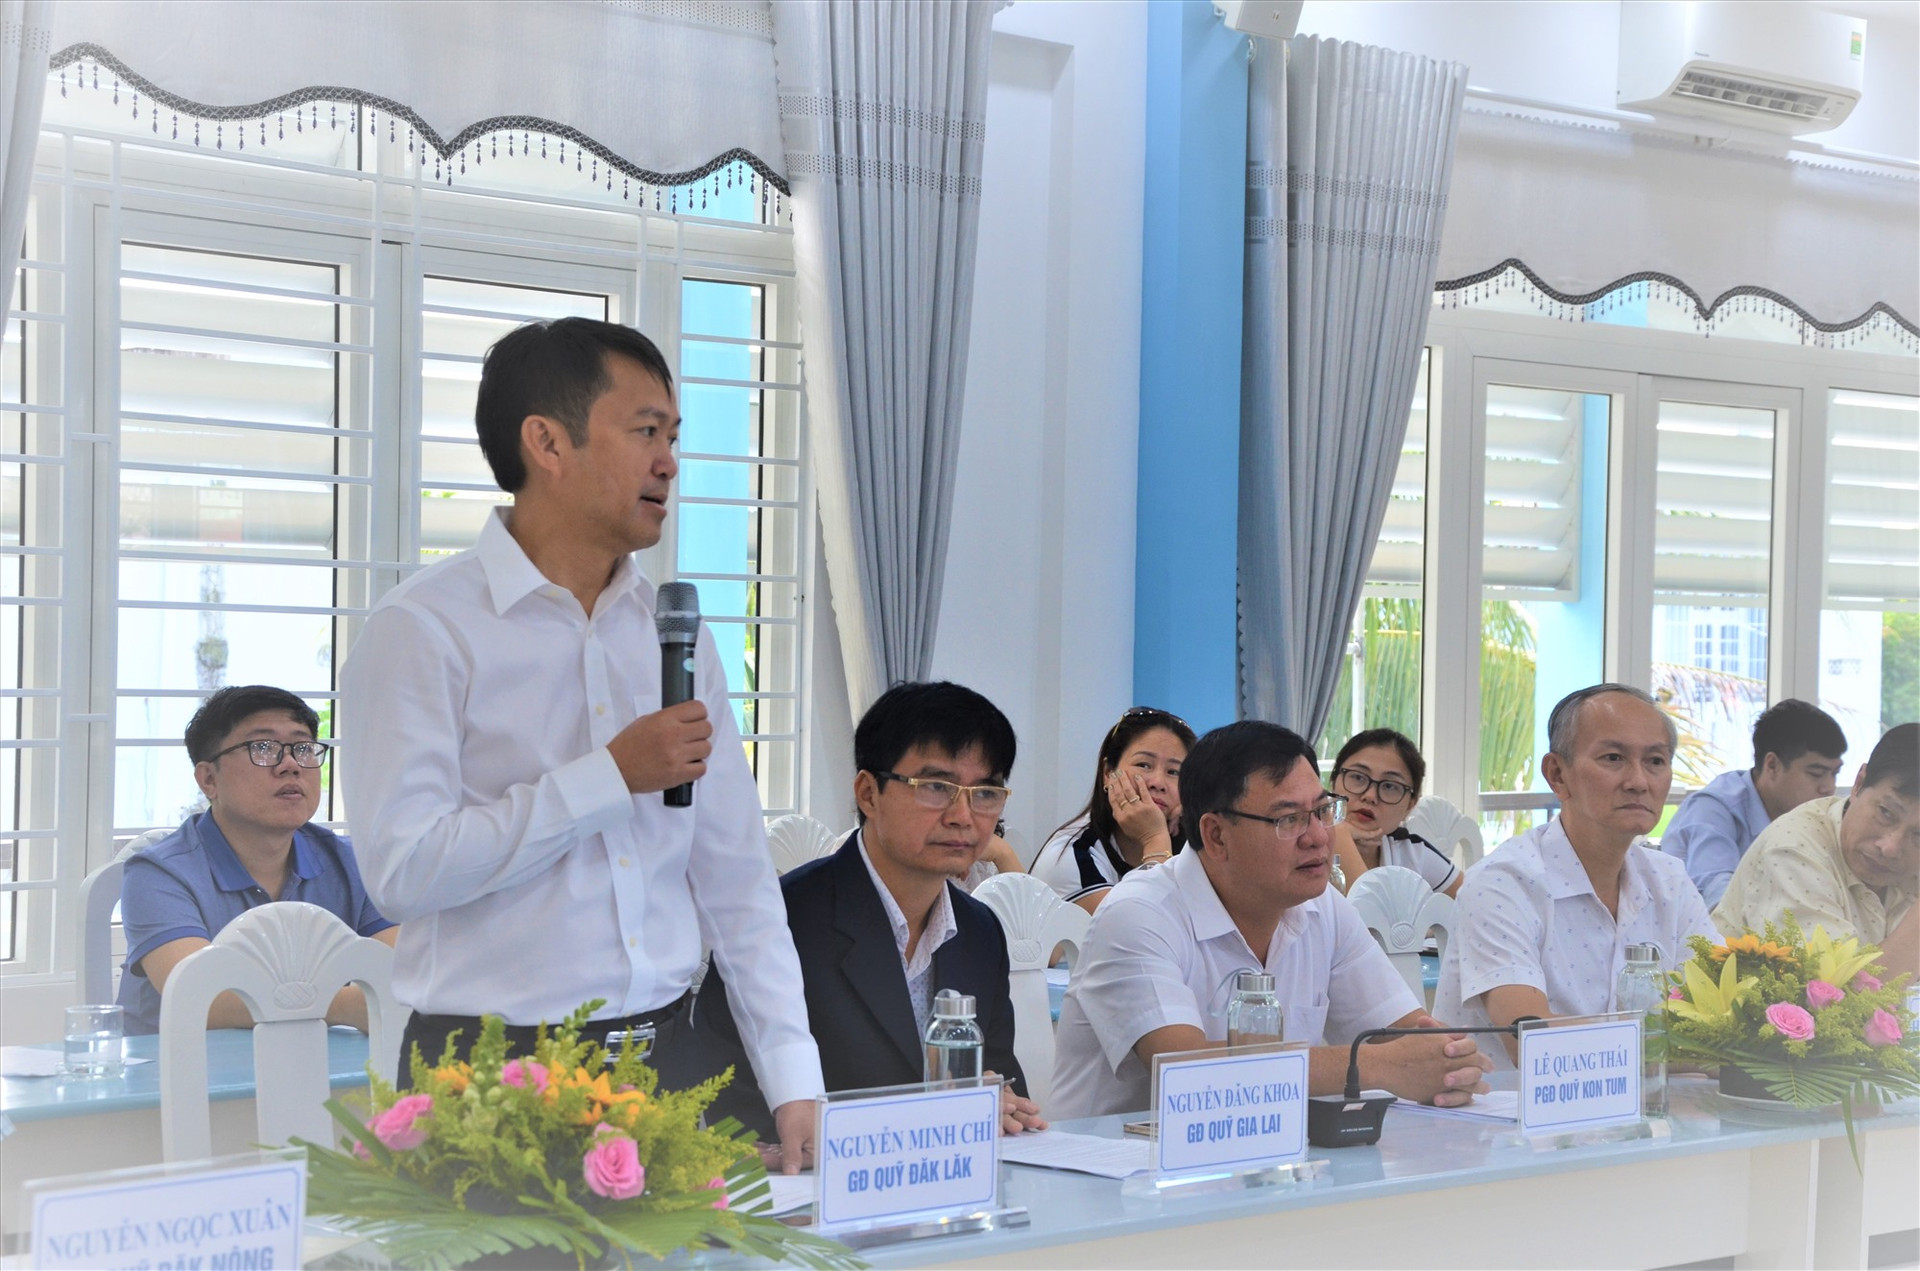 Ông Nguyễn Minh Chí – Giám đốc Quỹ Bảo vệ và phát triển rừng tỉnh Đắc Lắc